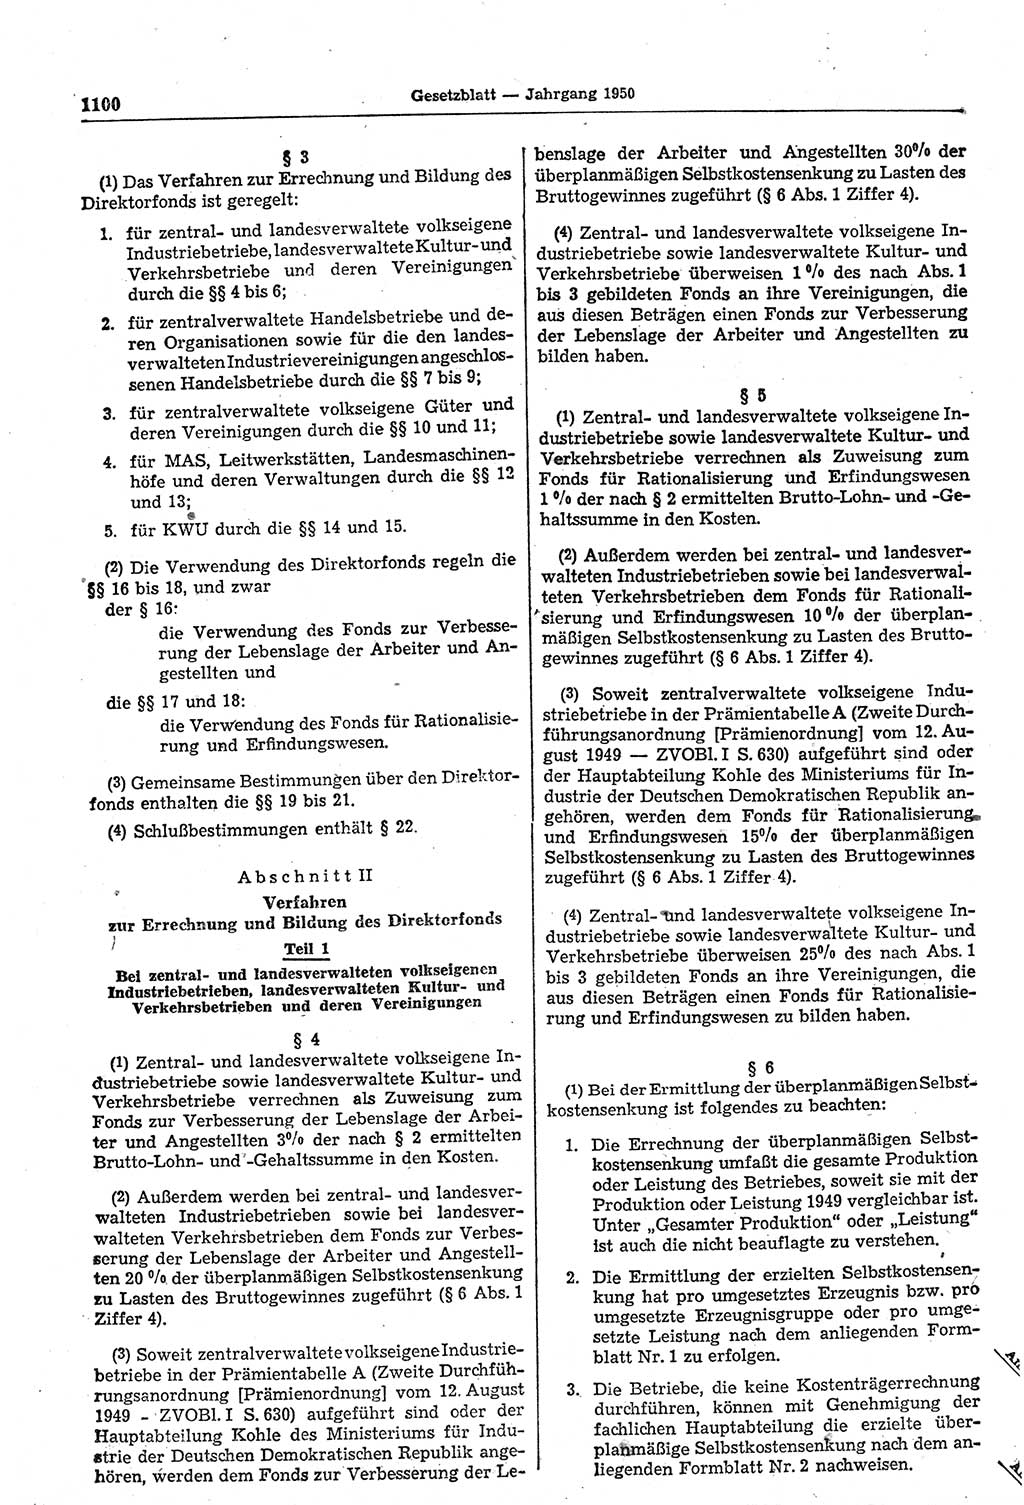 Gesetzblatt (GBl.) der Deutschen Demokratischen Republik (DDR) 1950, Seite 1100 (GBl. DDR 1950, S. 1100)